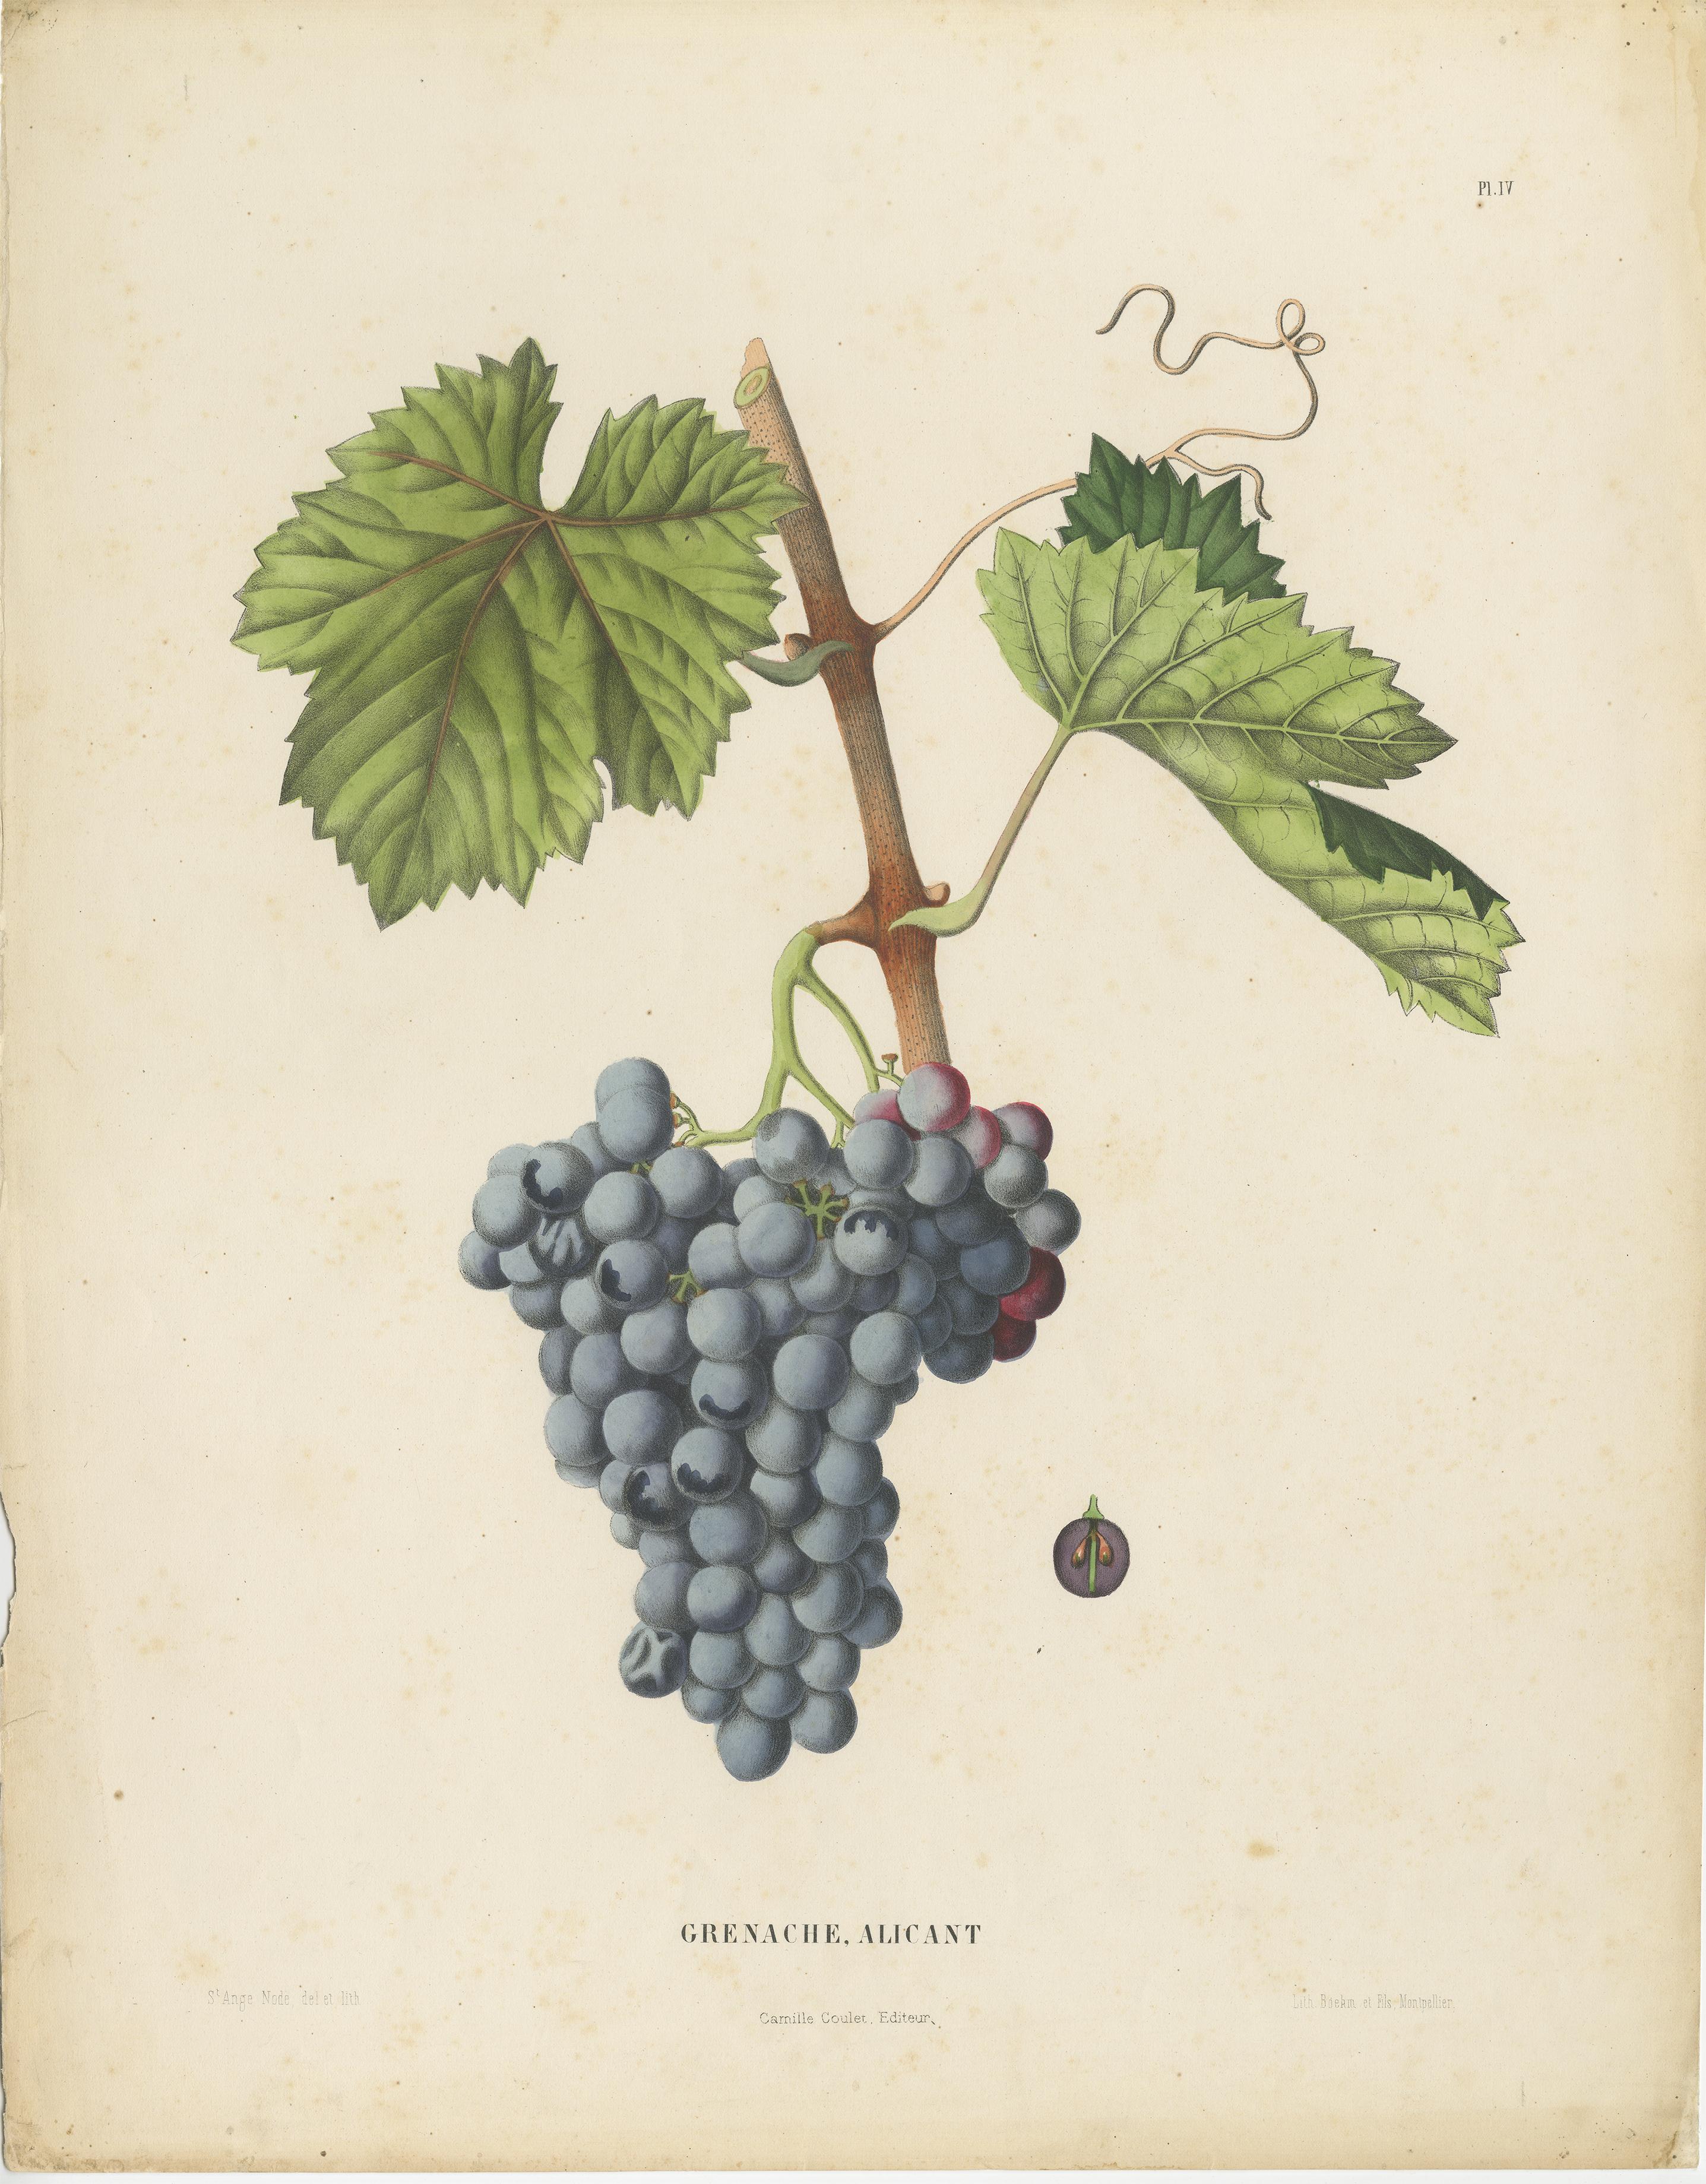 Late 19th Century Rare Original Antique Lithograph of the Grenache Alicante Grape Variety, 1890 For Sale